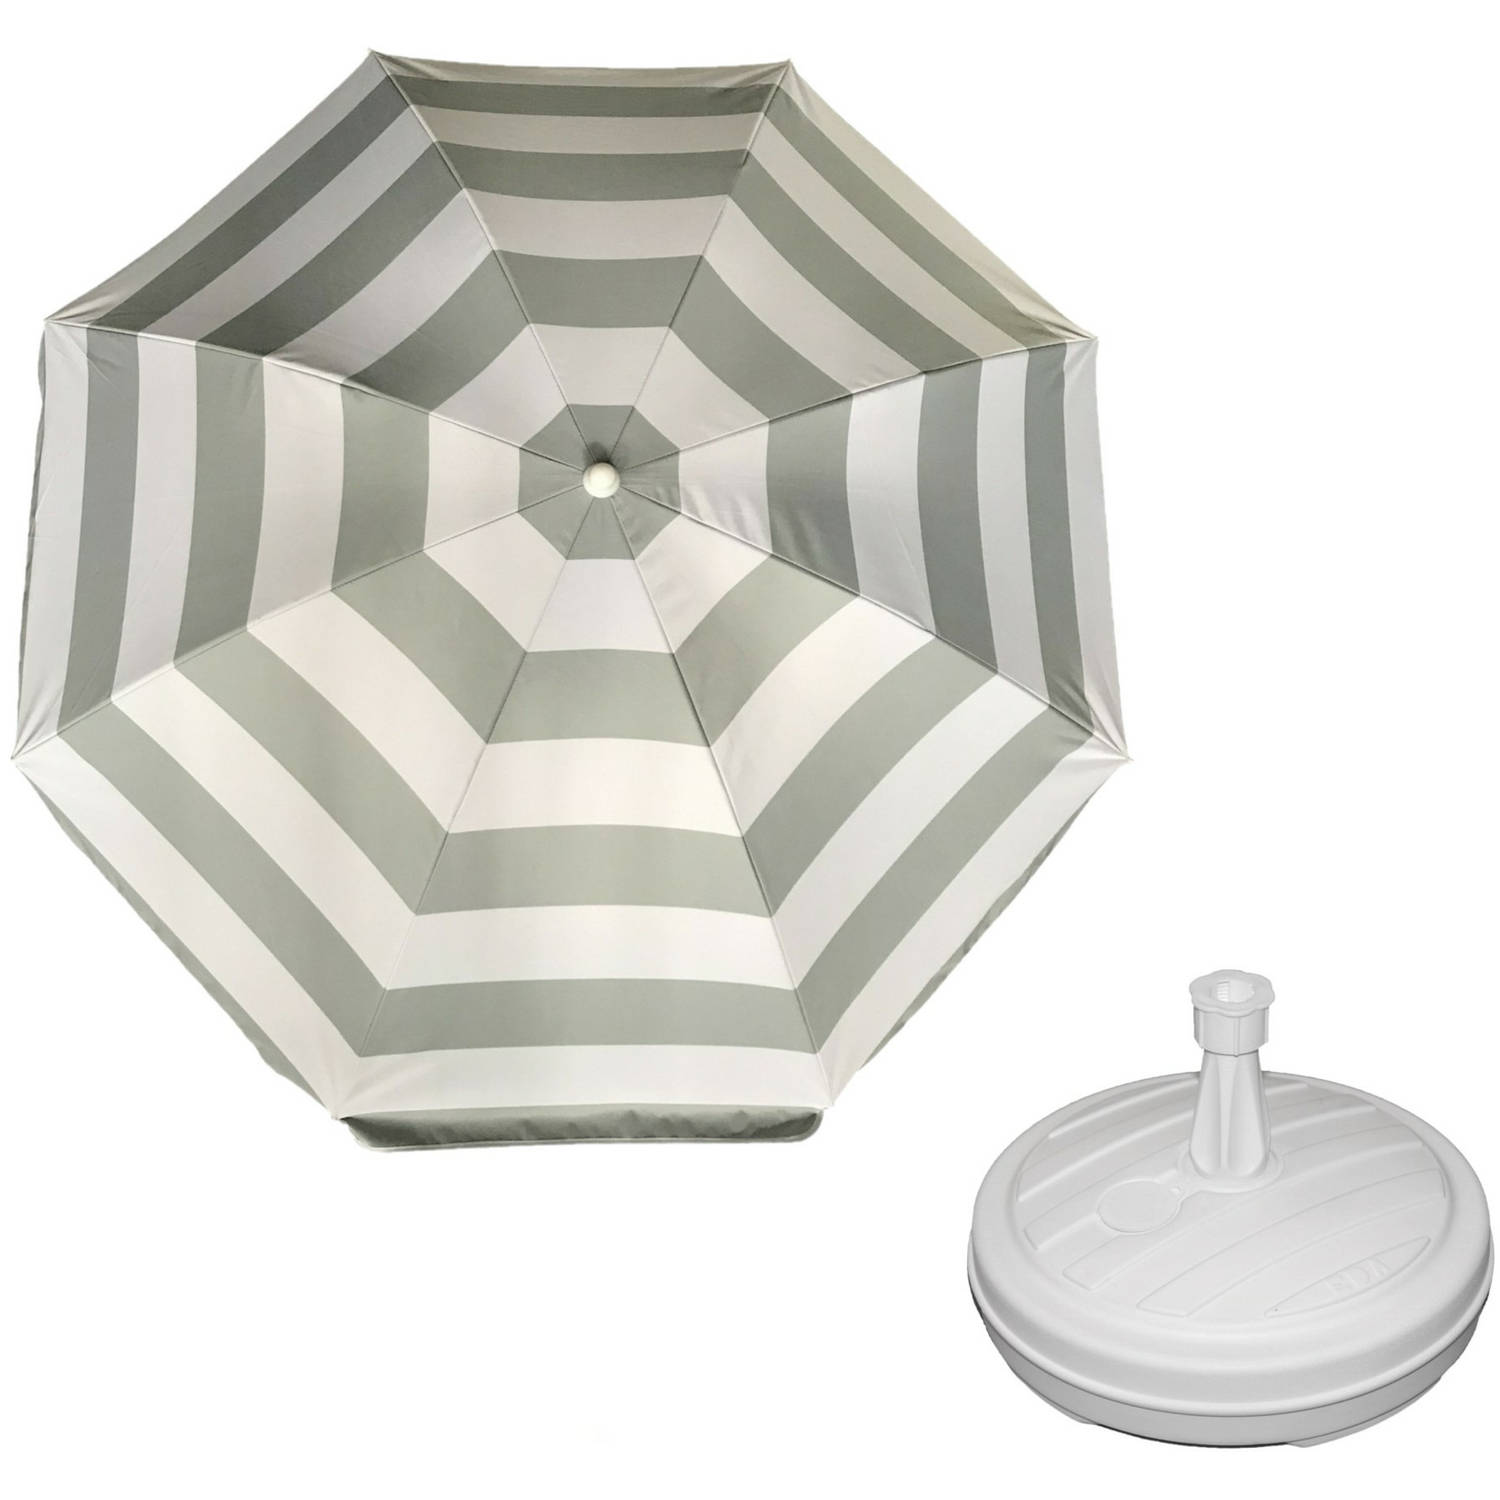 Parasol Zilver-wit D140 cm incl. draagtas parasolvoet 42 cm Parasols